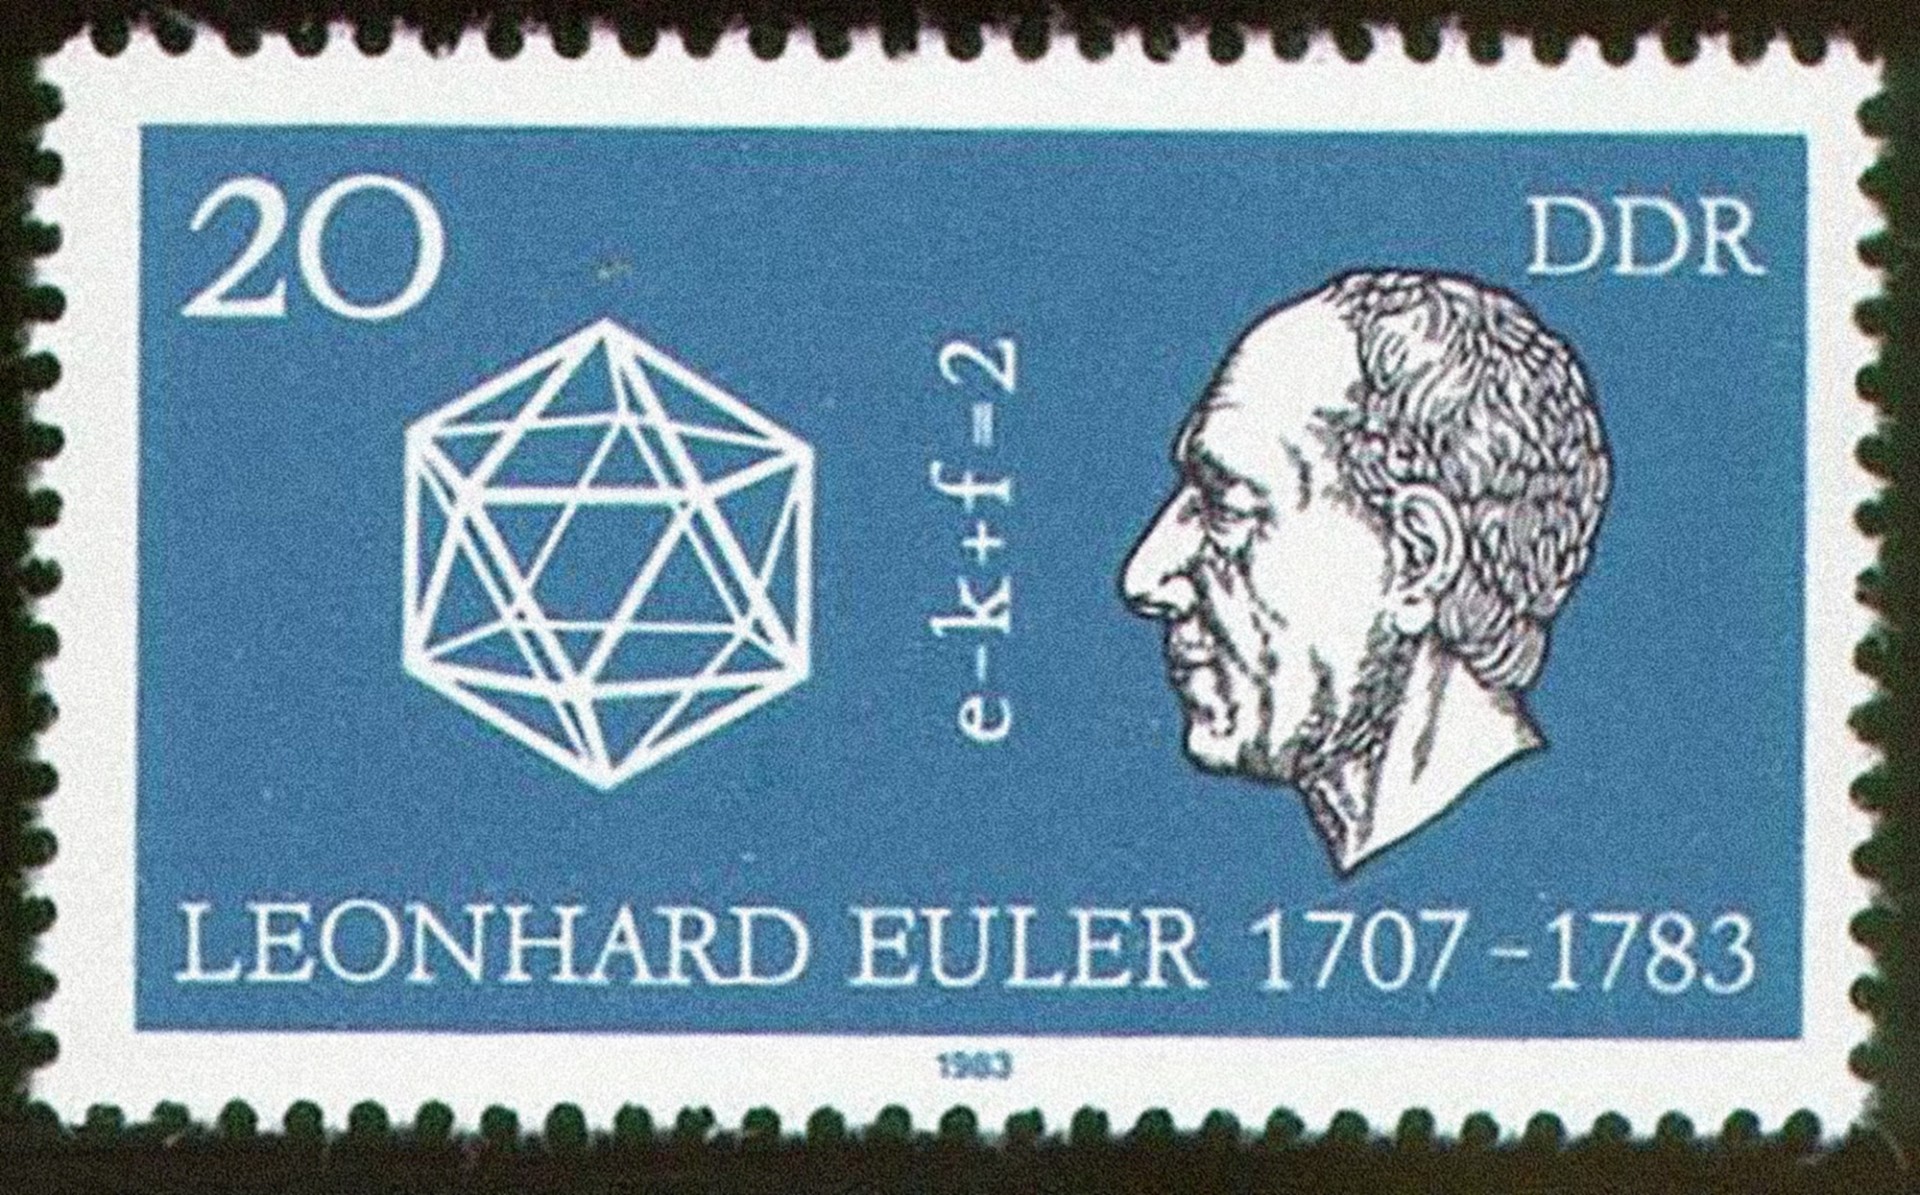 Leonhard Euler na znaczku pocztowym z NRD